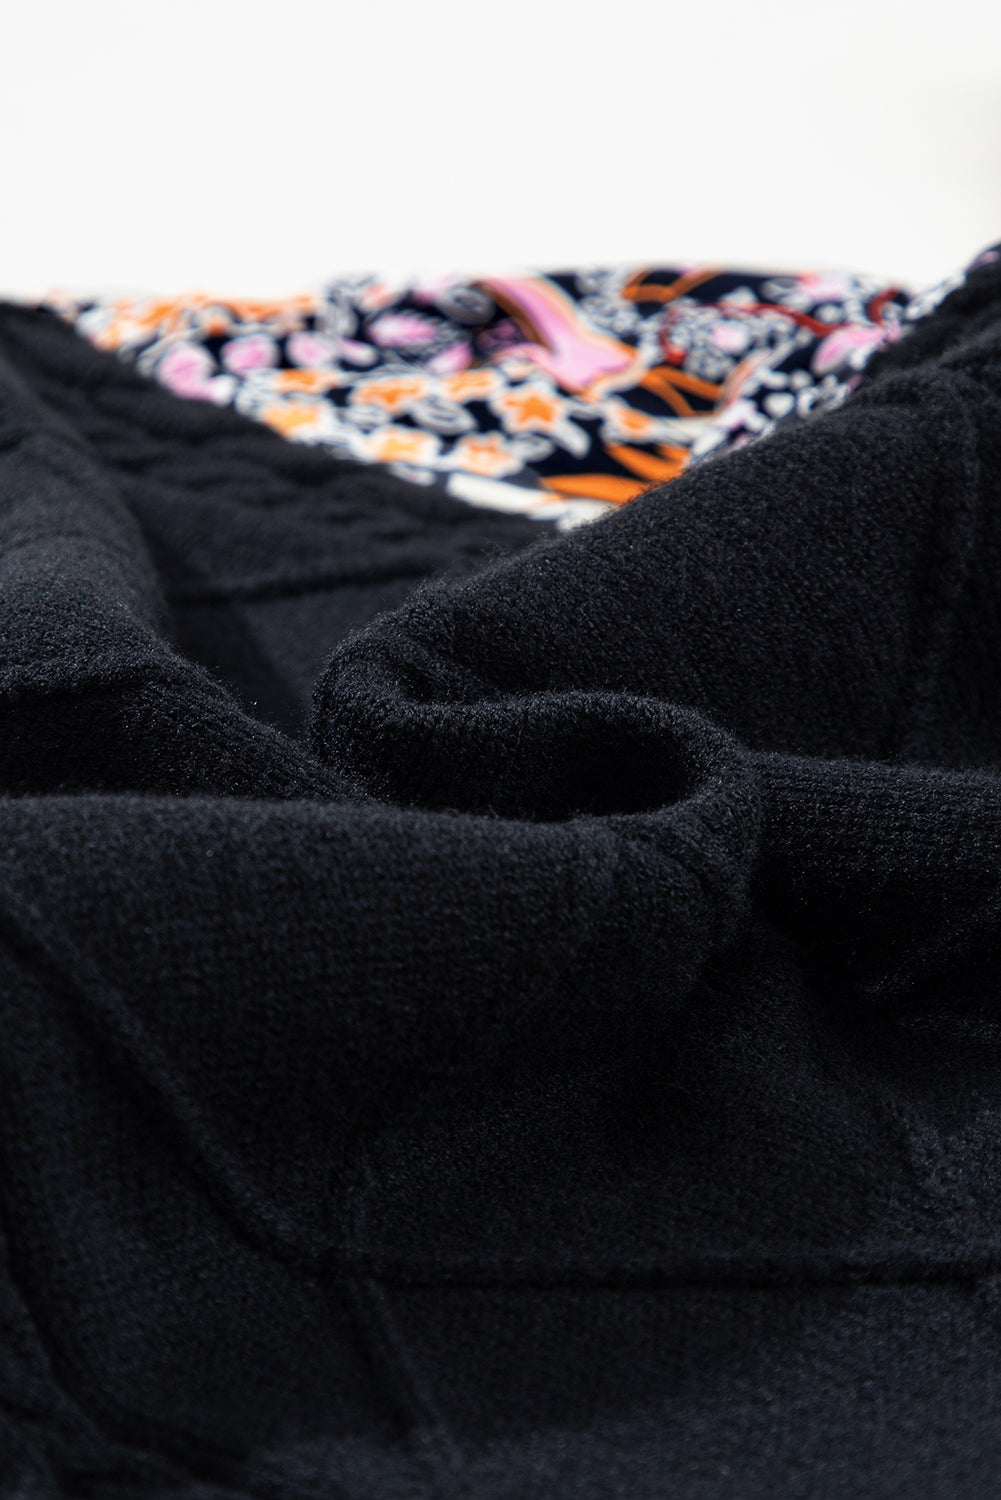 Črn pulover s cvetličnimi rokavi in ​​peplum v kontrastu